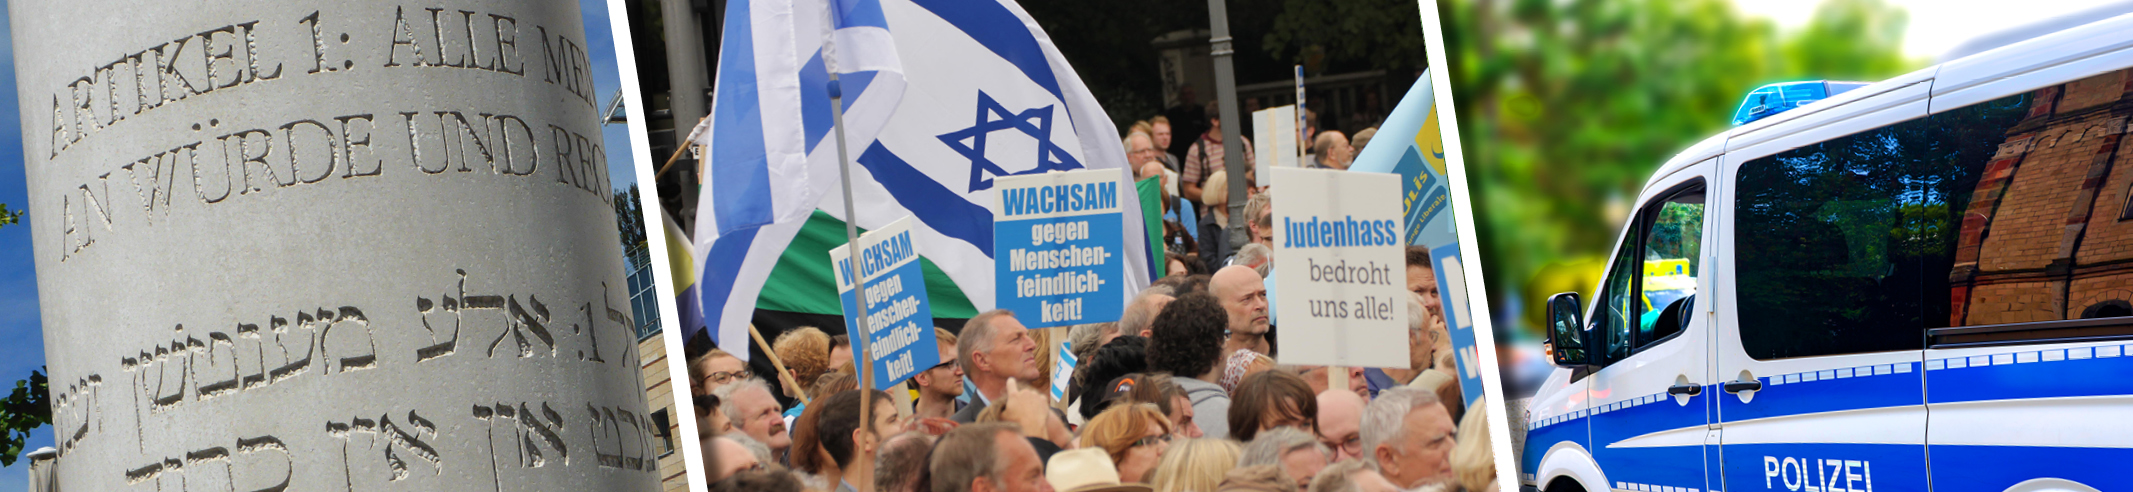 Eine Collage mit 1. einer Säule mit dem Artikel 1 des Grundgesetzes auf Deutsch und Jiddisch, 2. einem Protest gegen Judenhass und Menschenfeindlichkeit sowie 3. einem Polizeiauto.